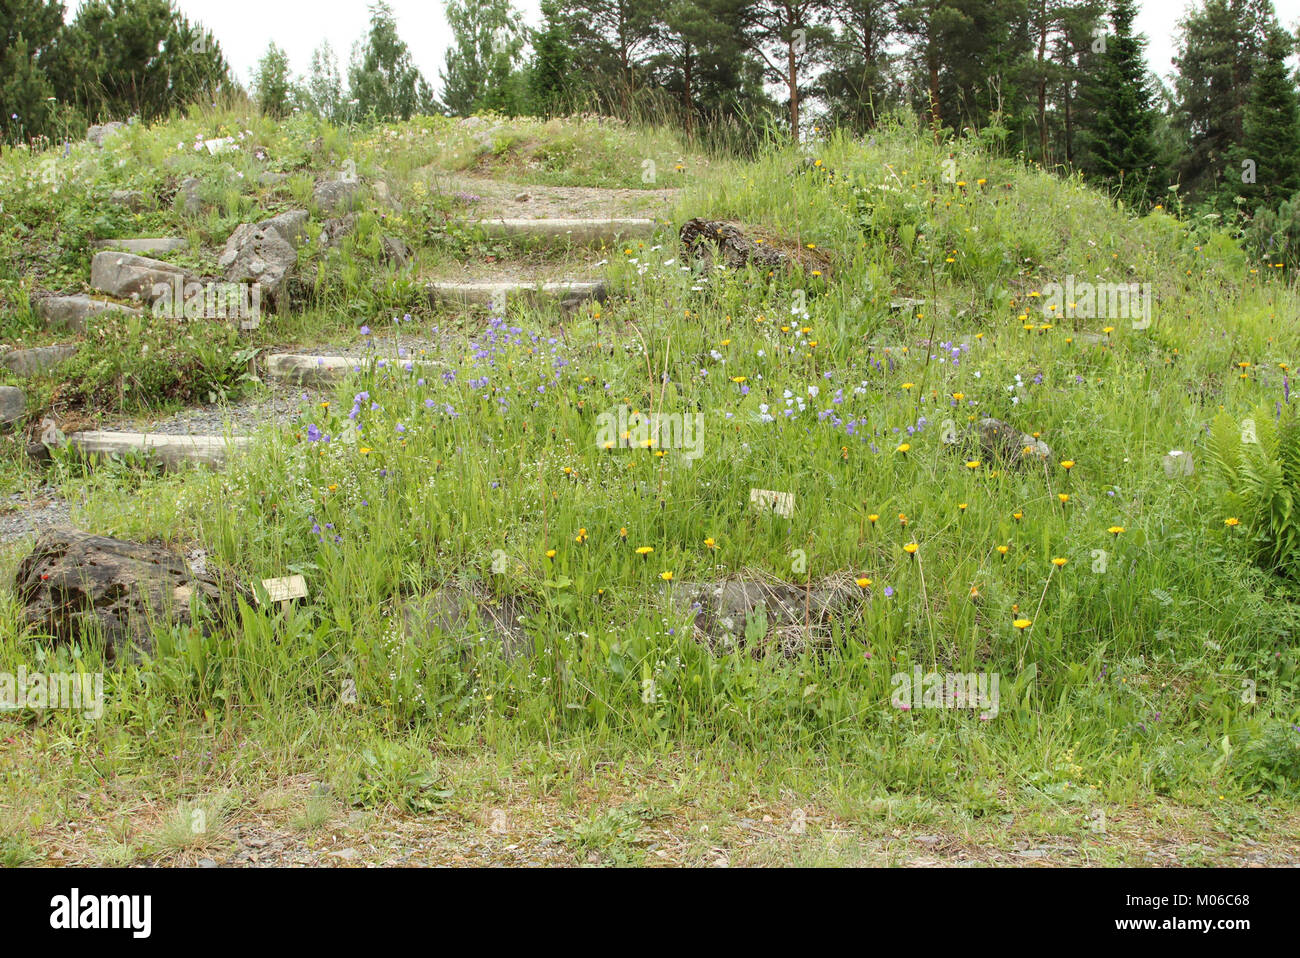 Botanical Gardens of Oulu University 20130623 05 Stock Photo